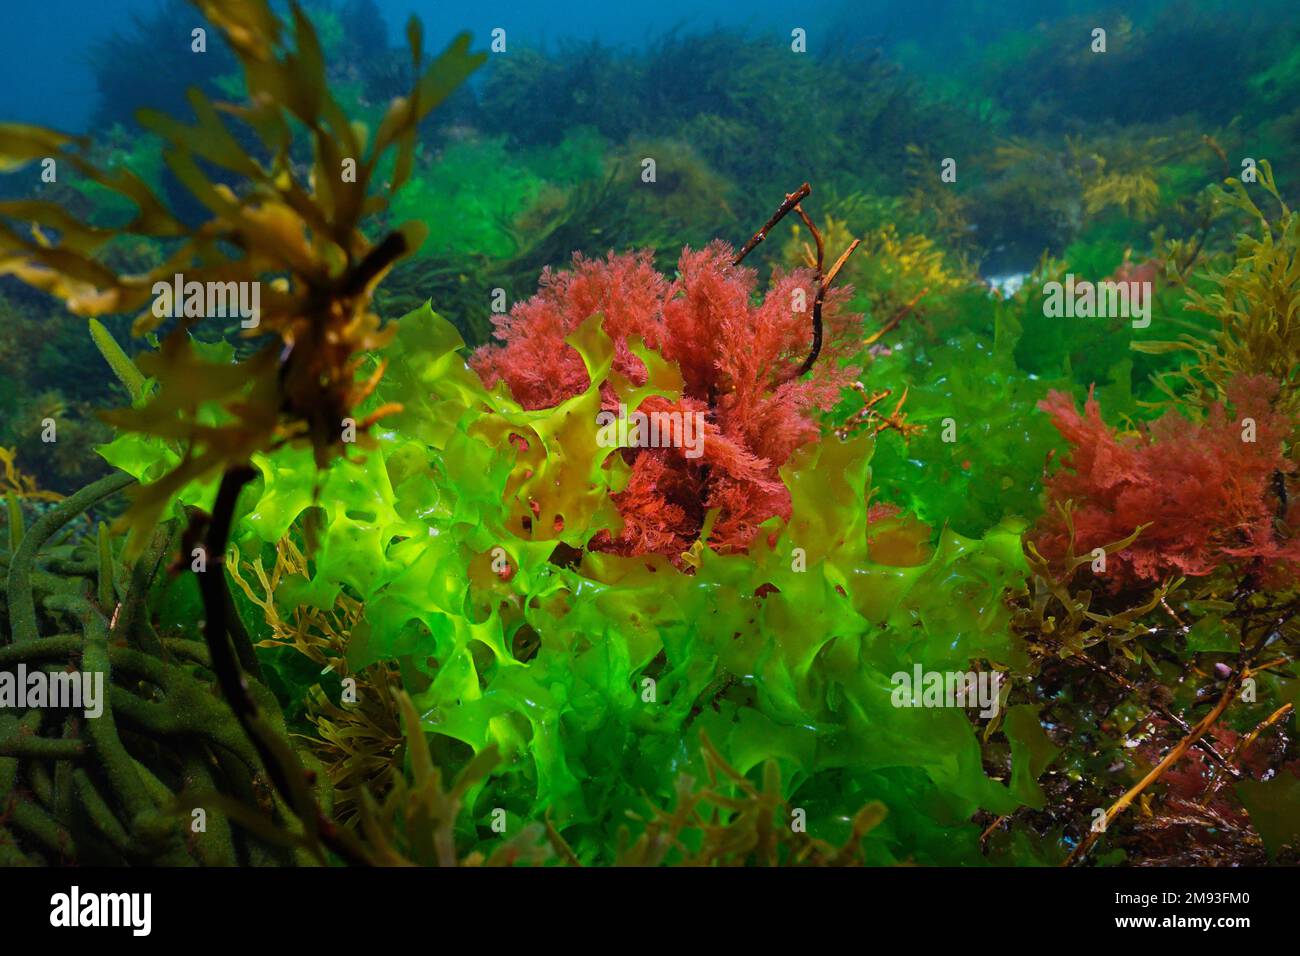 Grünalge Ulva lactuca und Rotalge Plocamium cartilagineum, Unterwasser im Atlantik, Spanien Stockfoto